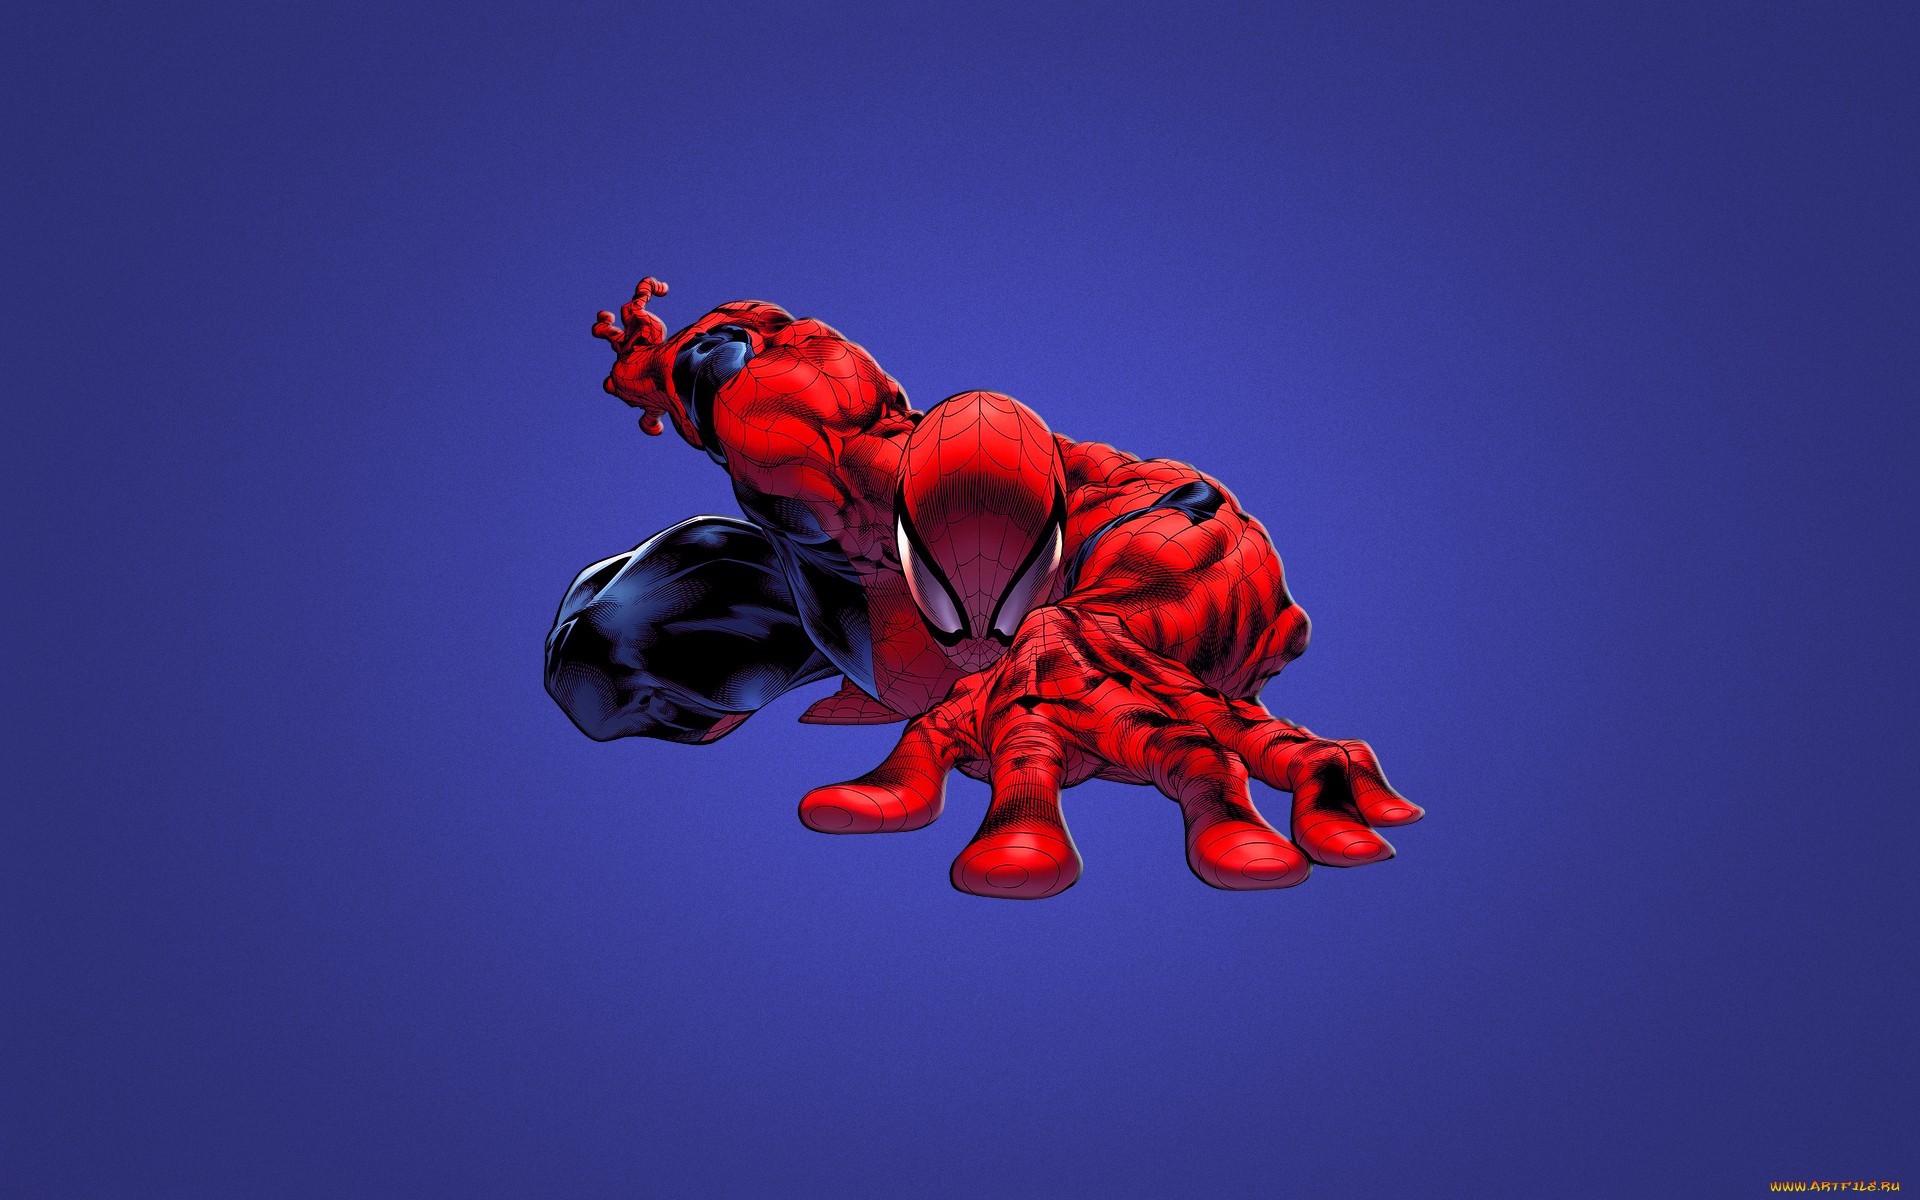 Descarga gratuita de fondo de pantalla para móvil de Spiderman, Cine, Fondo.